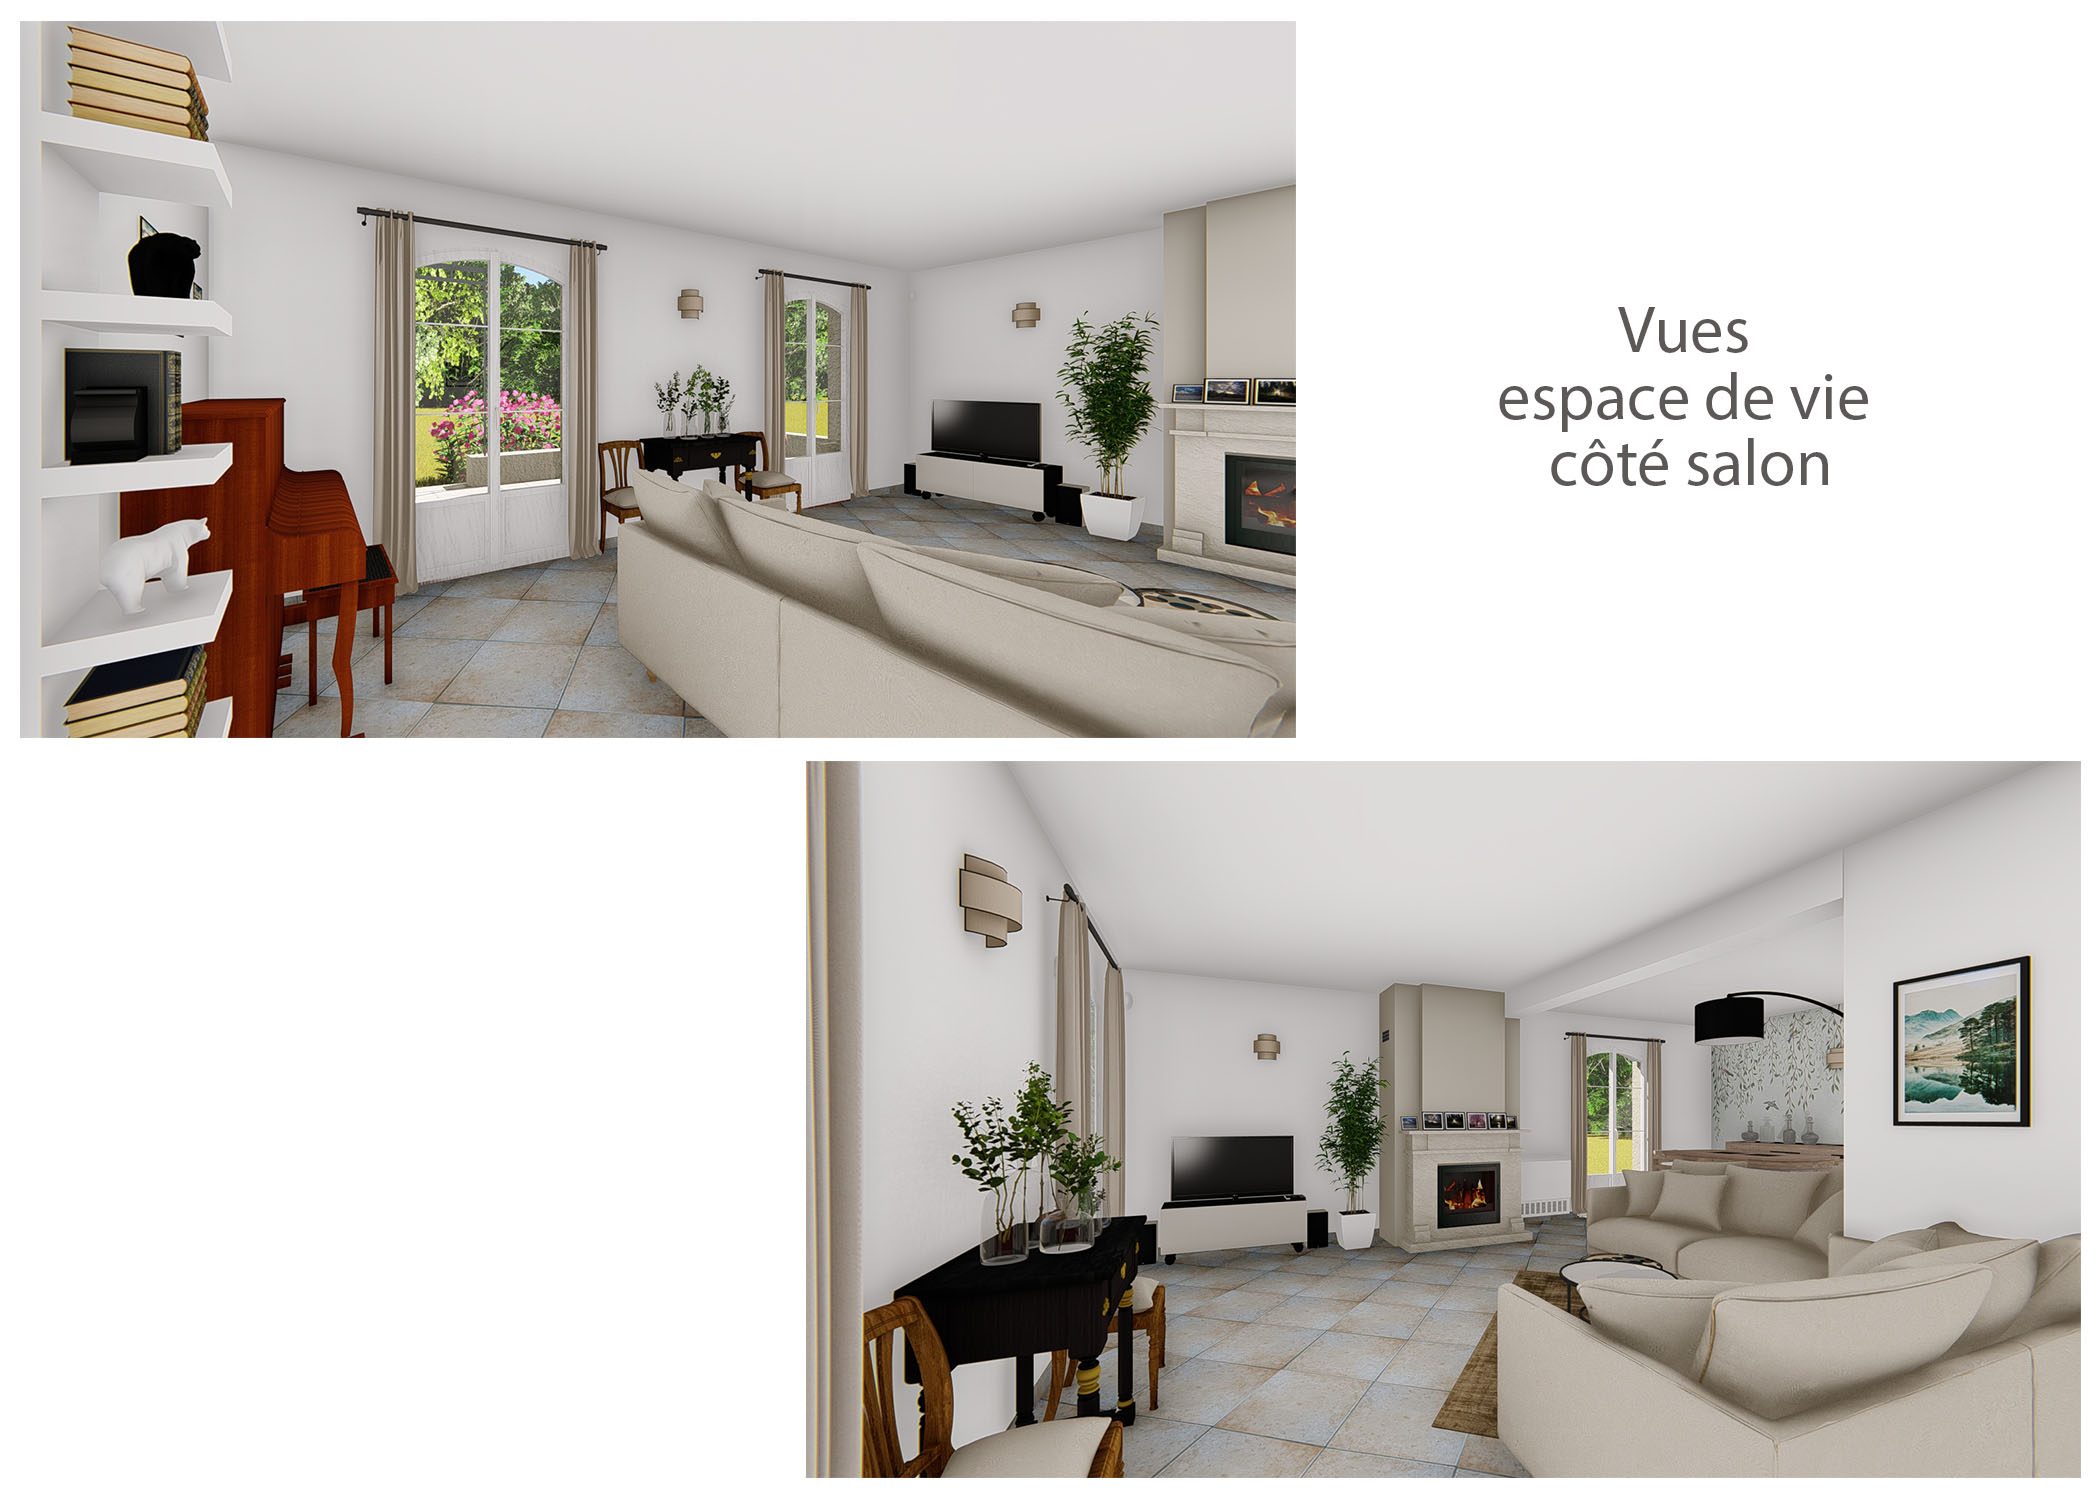 agencement-decoration-espace de vie et sanitaires peynier-vues espace de vie cote salon 1-dekho design